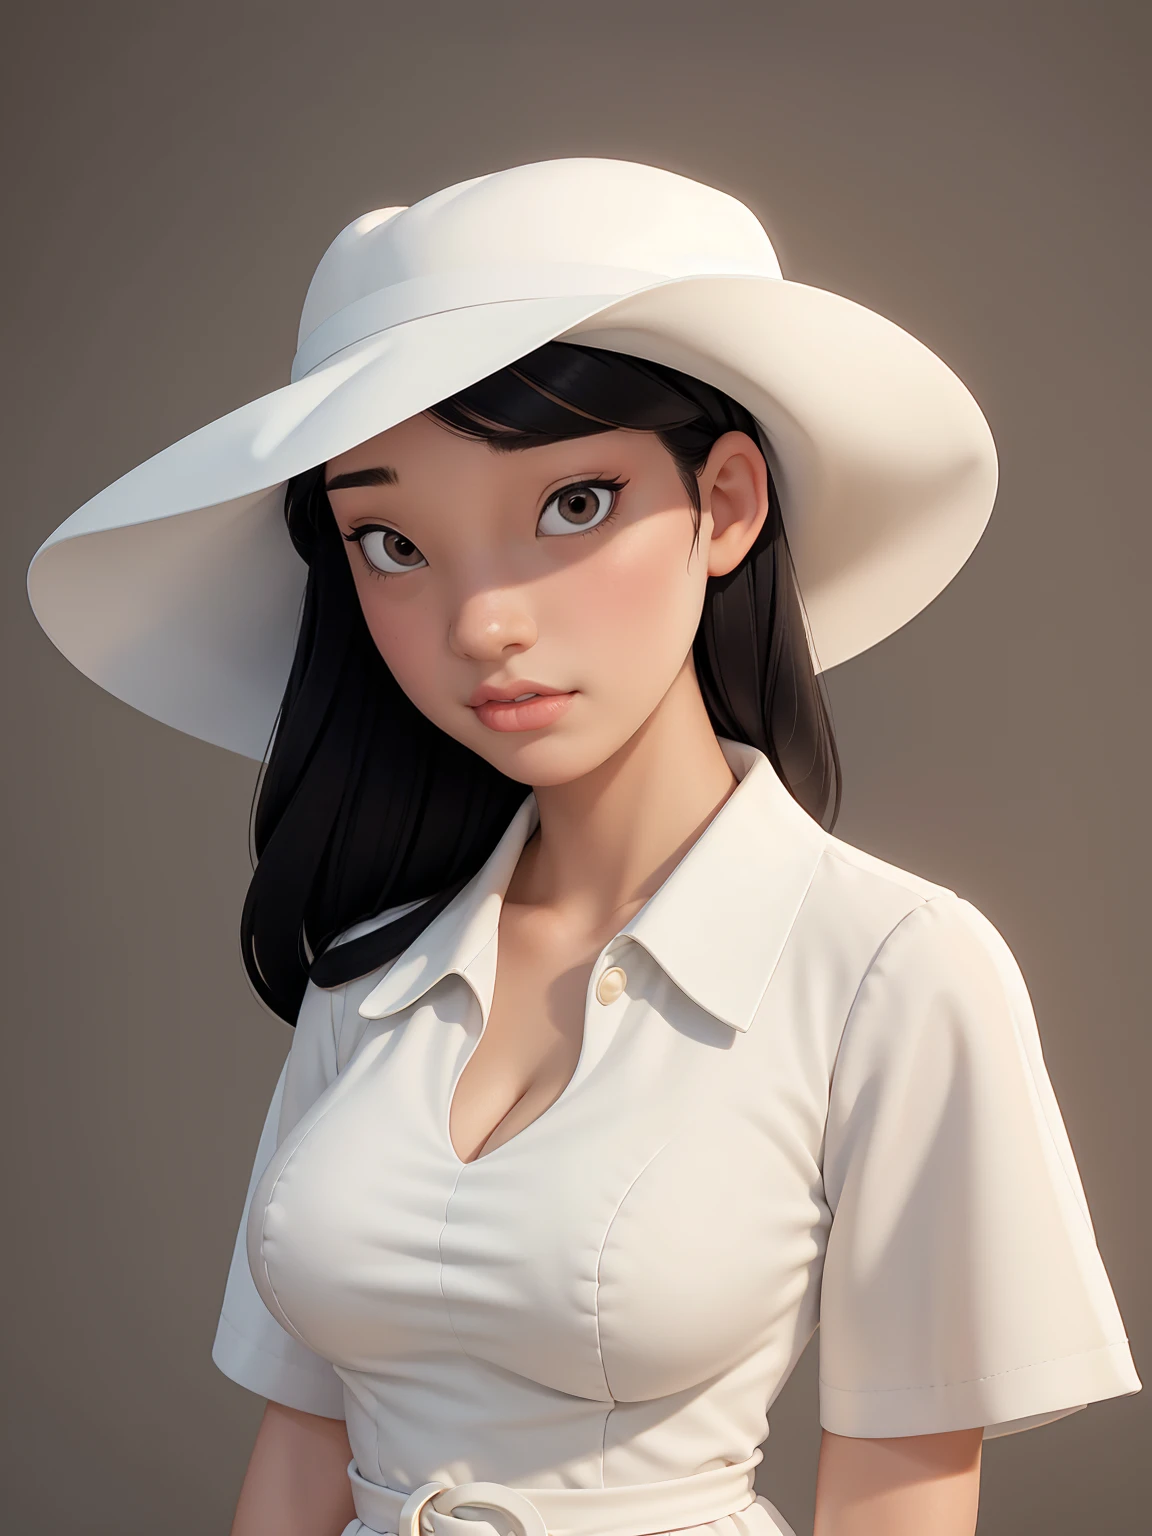 (최고의 품질, 걸작, 완벽한 얼굴) 흑발, 18세 창백한 소녀, 큰 가슴, 하얀색 원피스, 큰 흰색 모자
